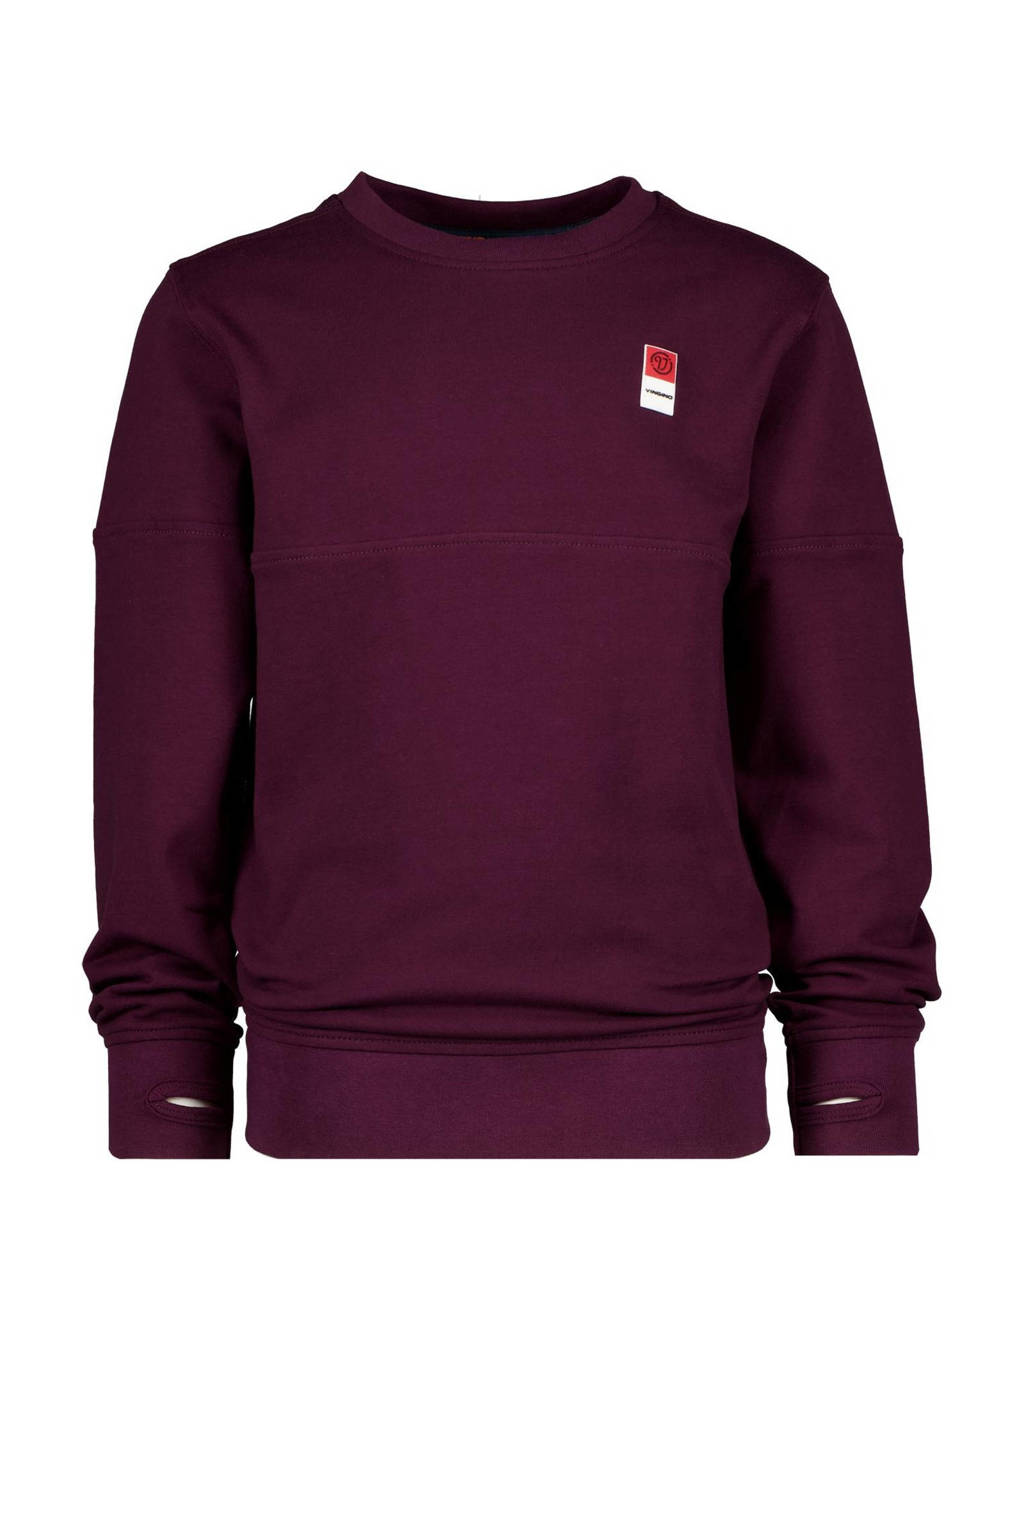 Rood, donkerrood en paarse jongens Vingino Essentials sweater met lange mouwen en ronde hals